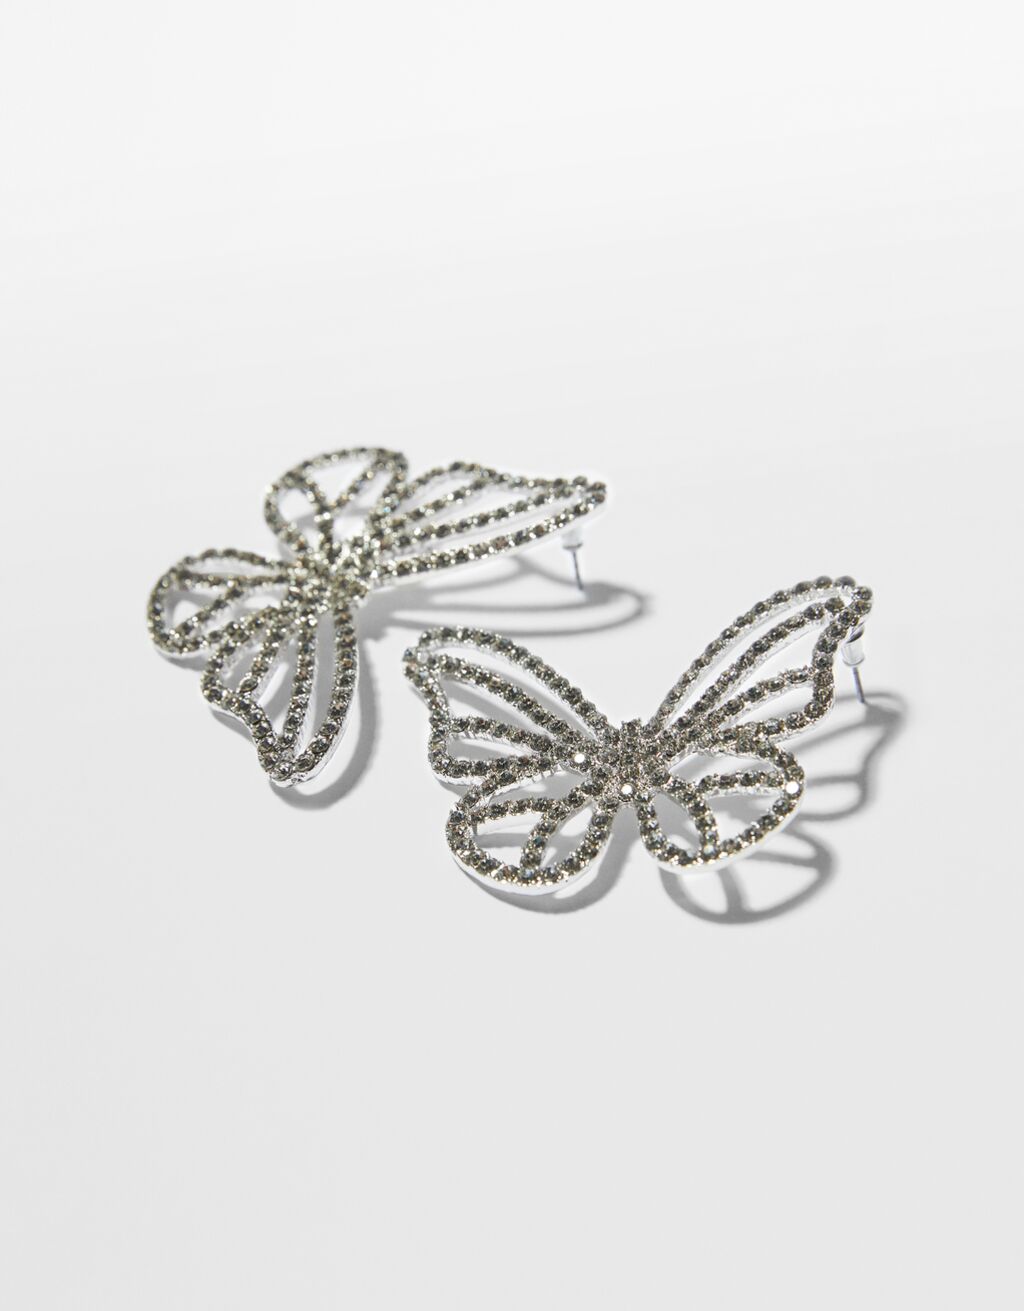 Rhinestone butterfly earrings